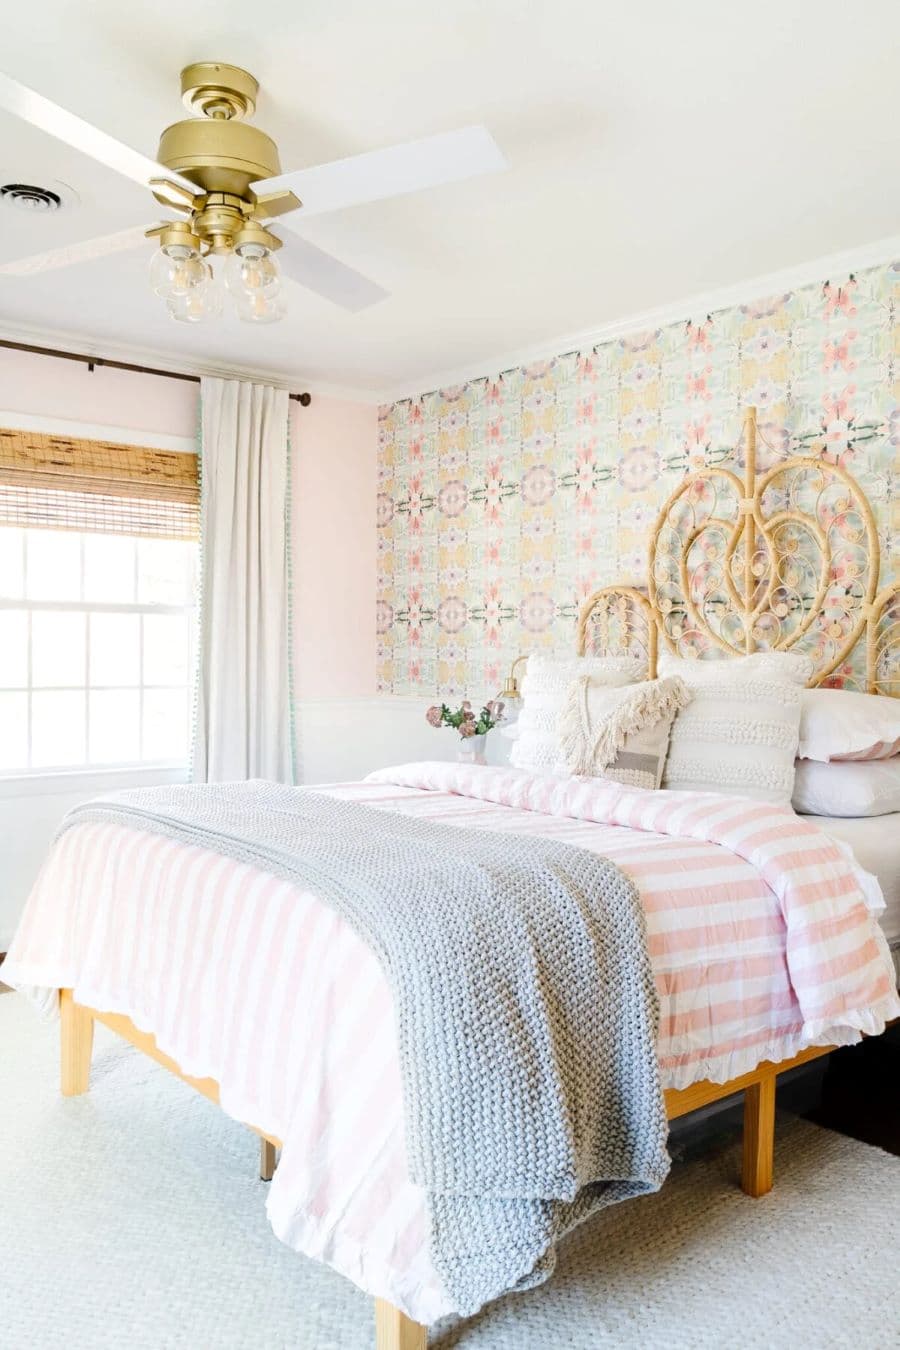 Dormitorio estilo romántico, con gran cama king con plumón a rayas rosado con blanco. Respaldo de mimbre. Ventilador de techo dorado, con luces incorporadas. Pared rosada y un muro con papel mural vintage. Alfombra gris